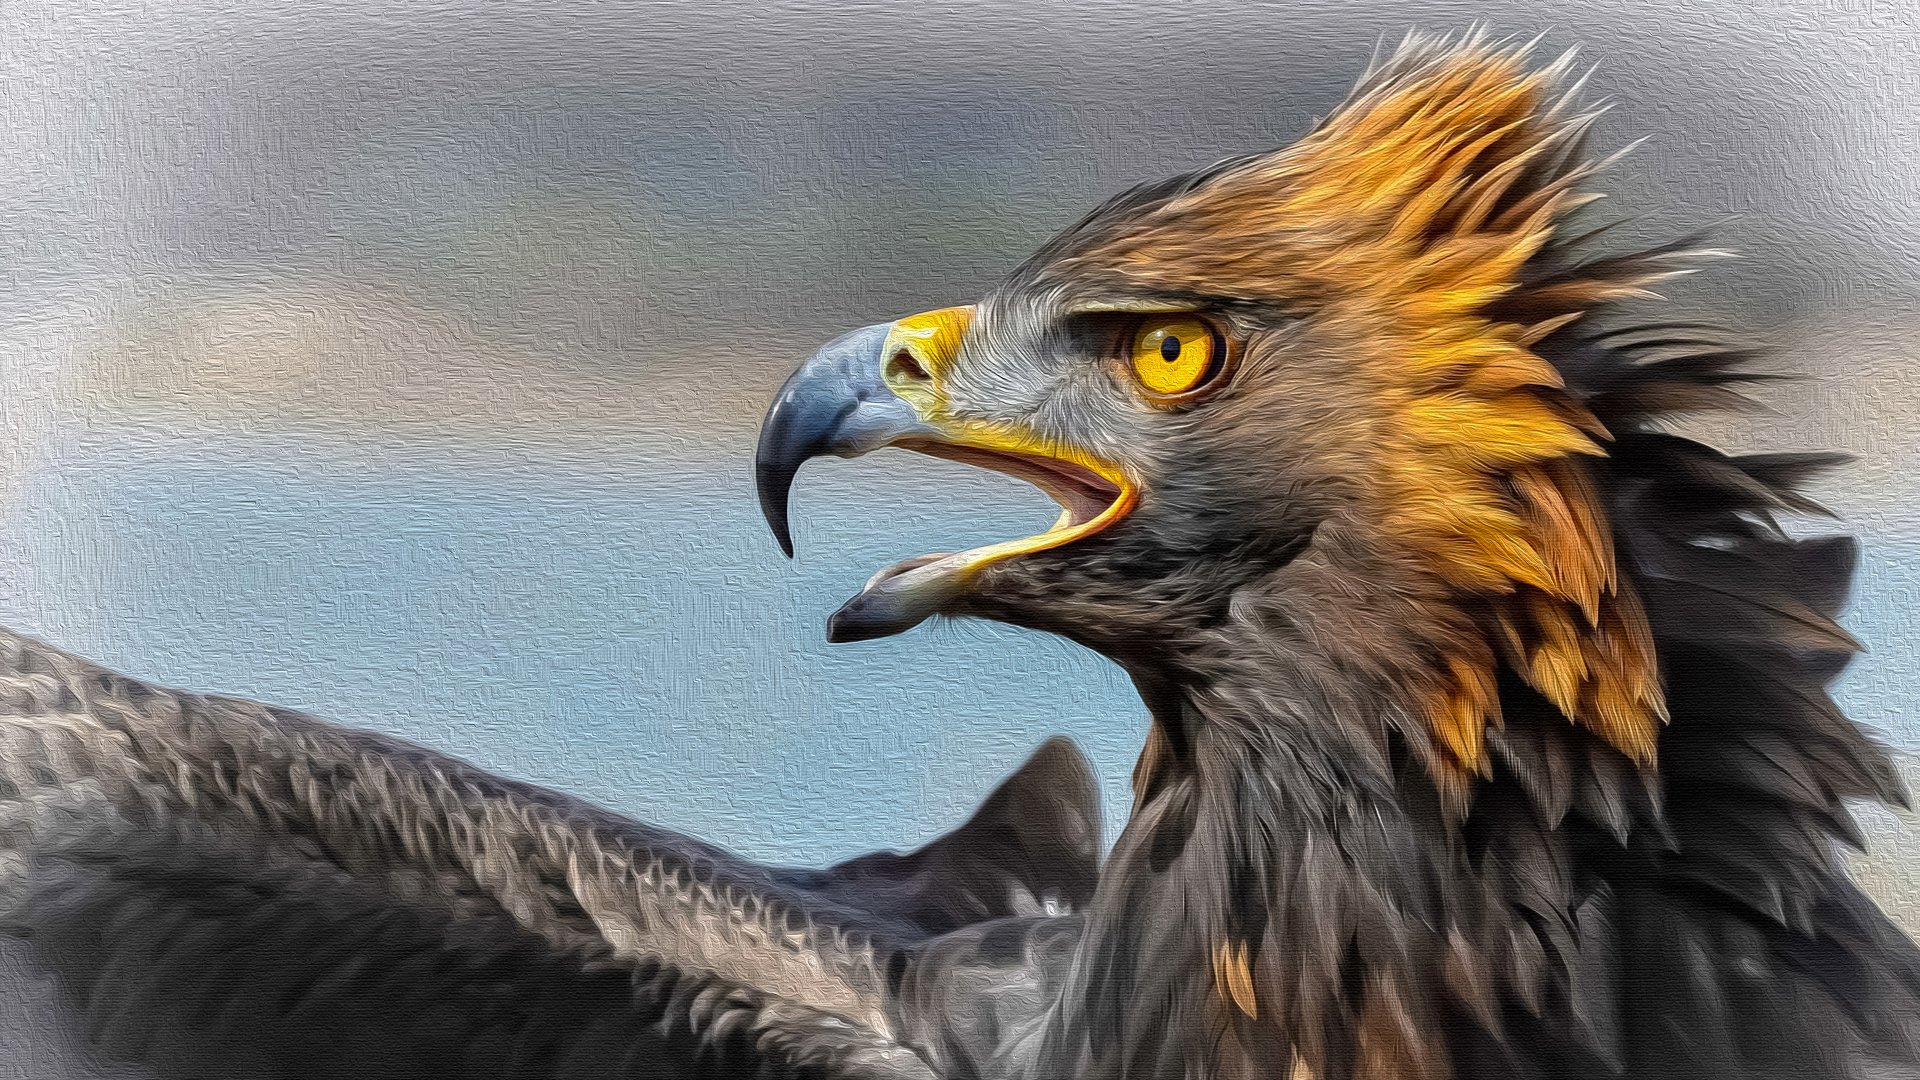 Animal Eagle 4k Ultra HD Wallpaper by Manufan63